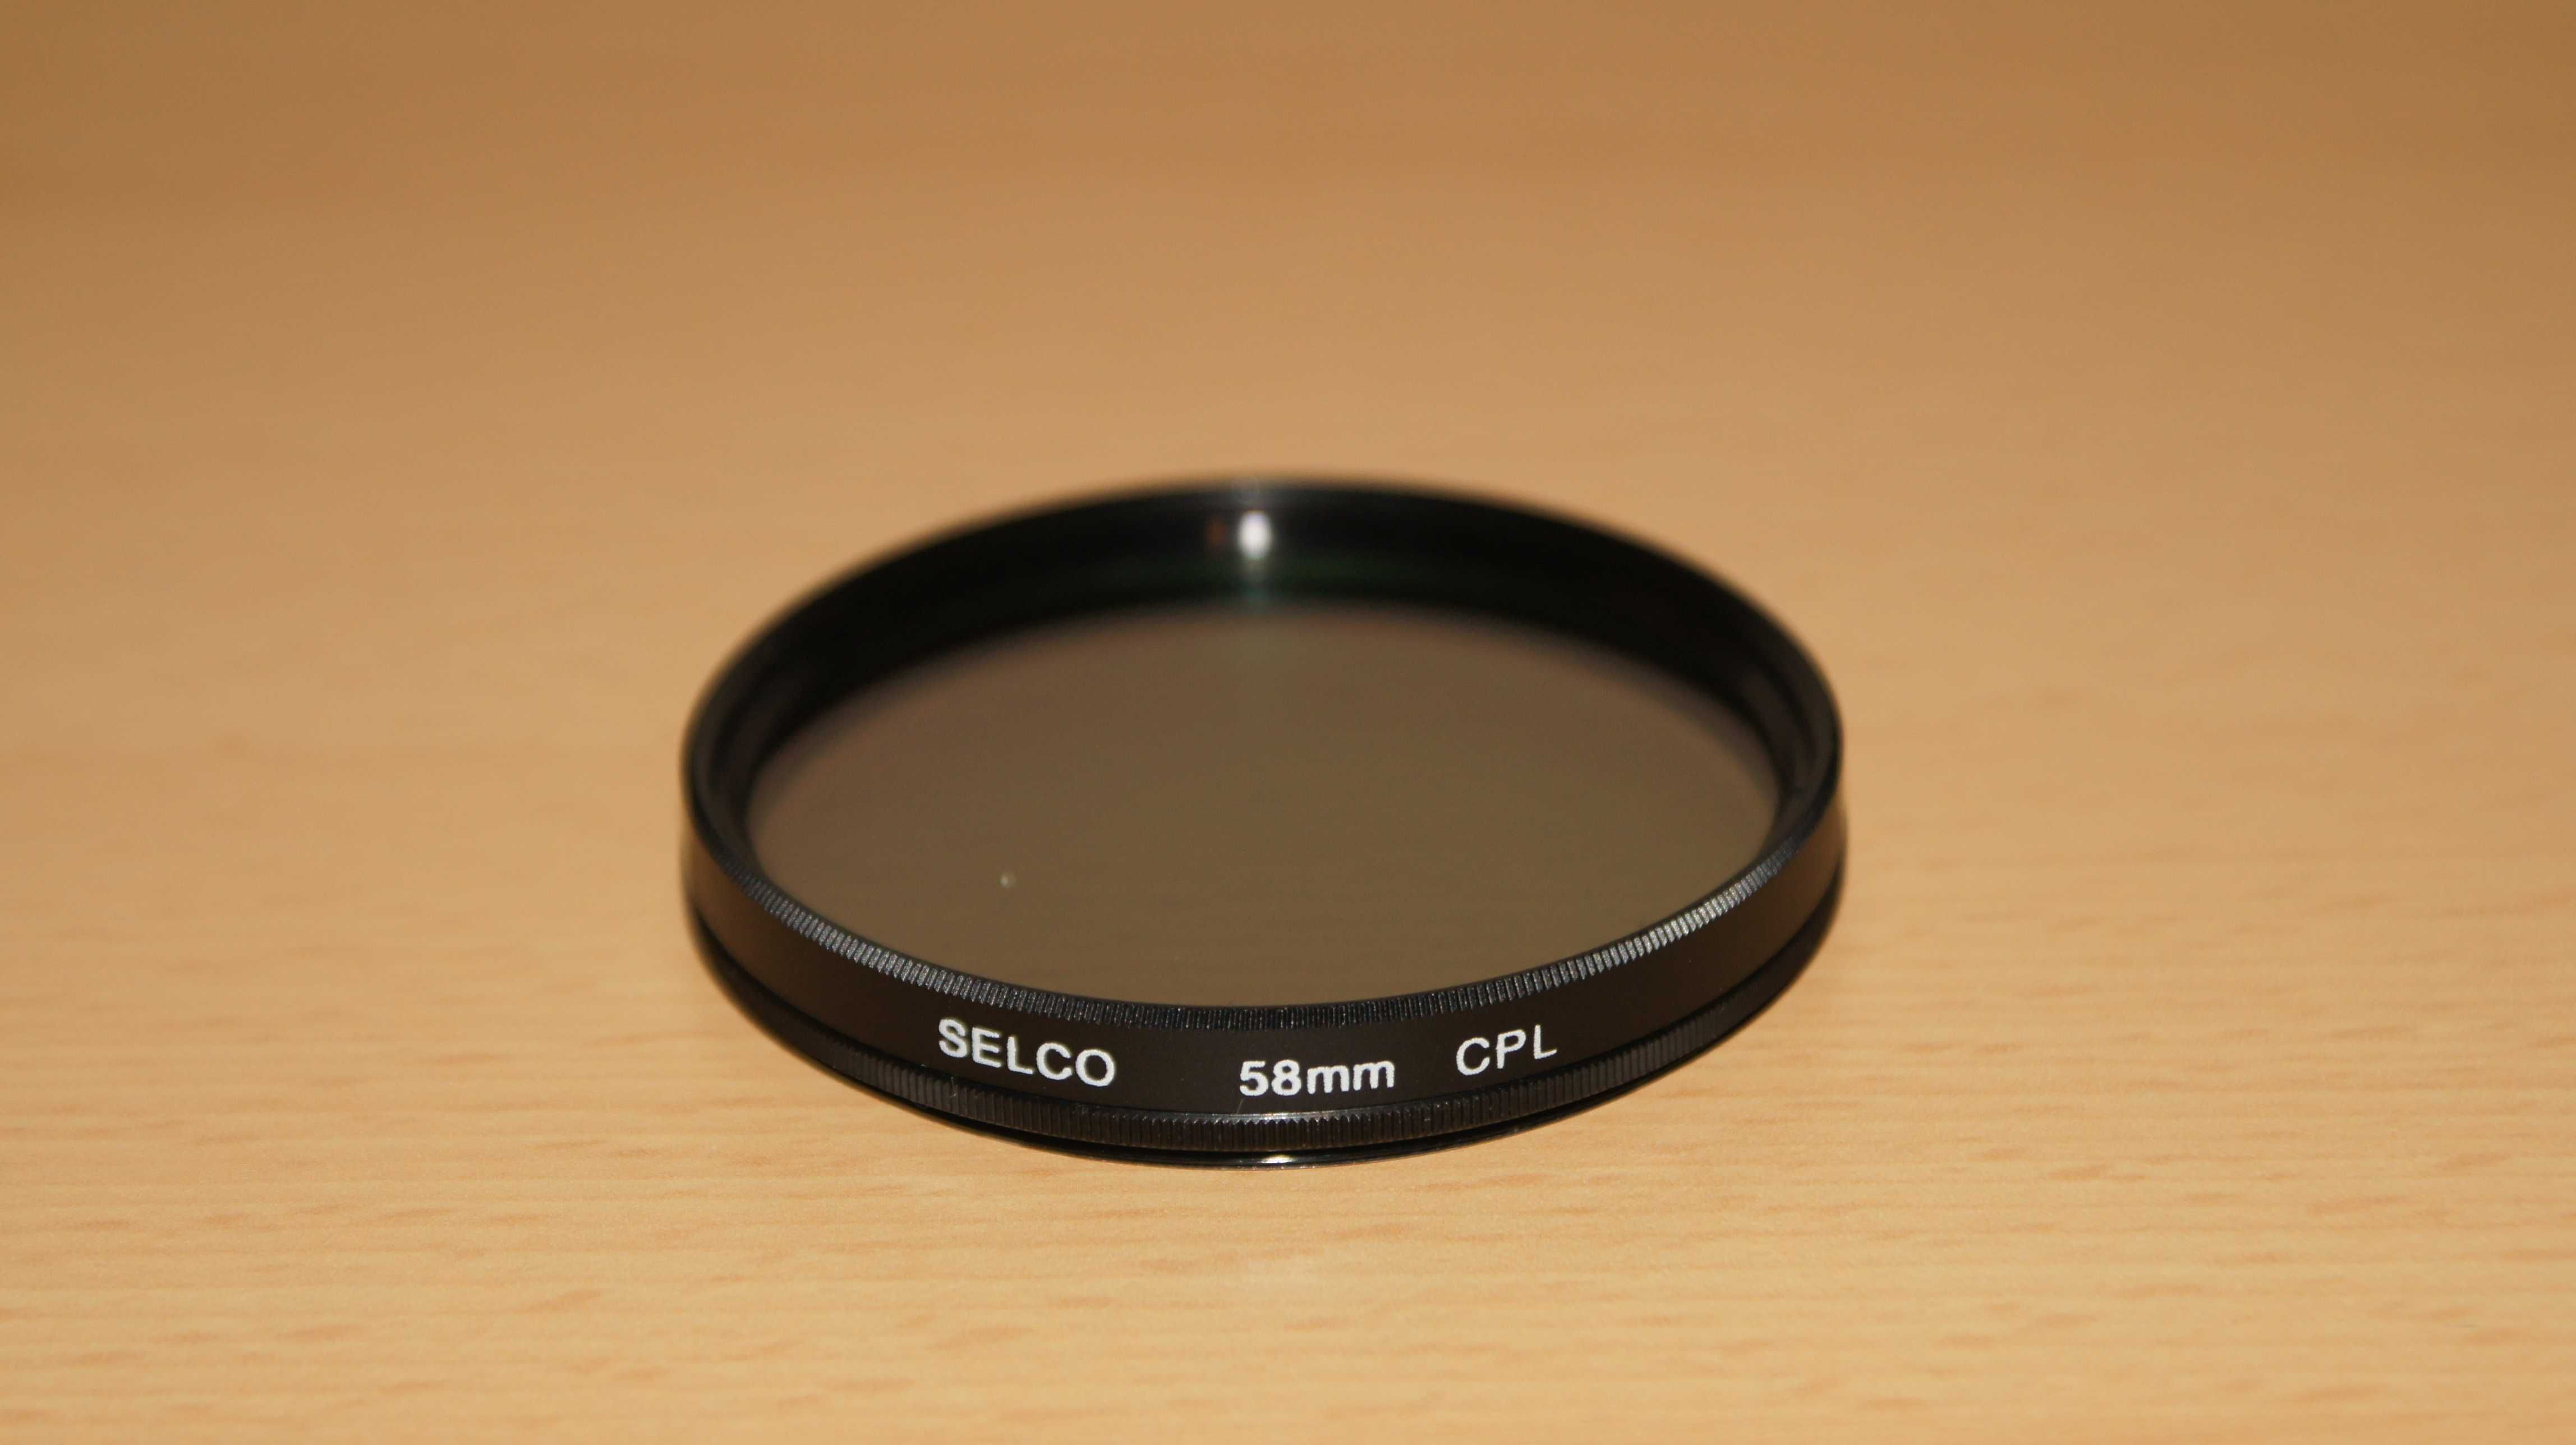 Filtr polaryzacyjny w opakowaniu 58mm Selco